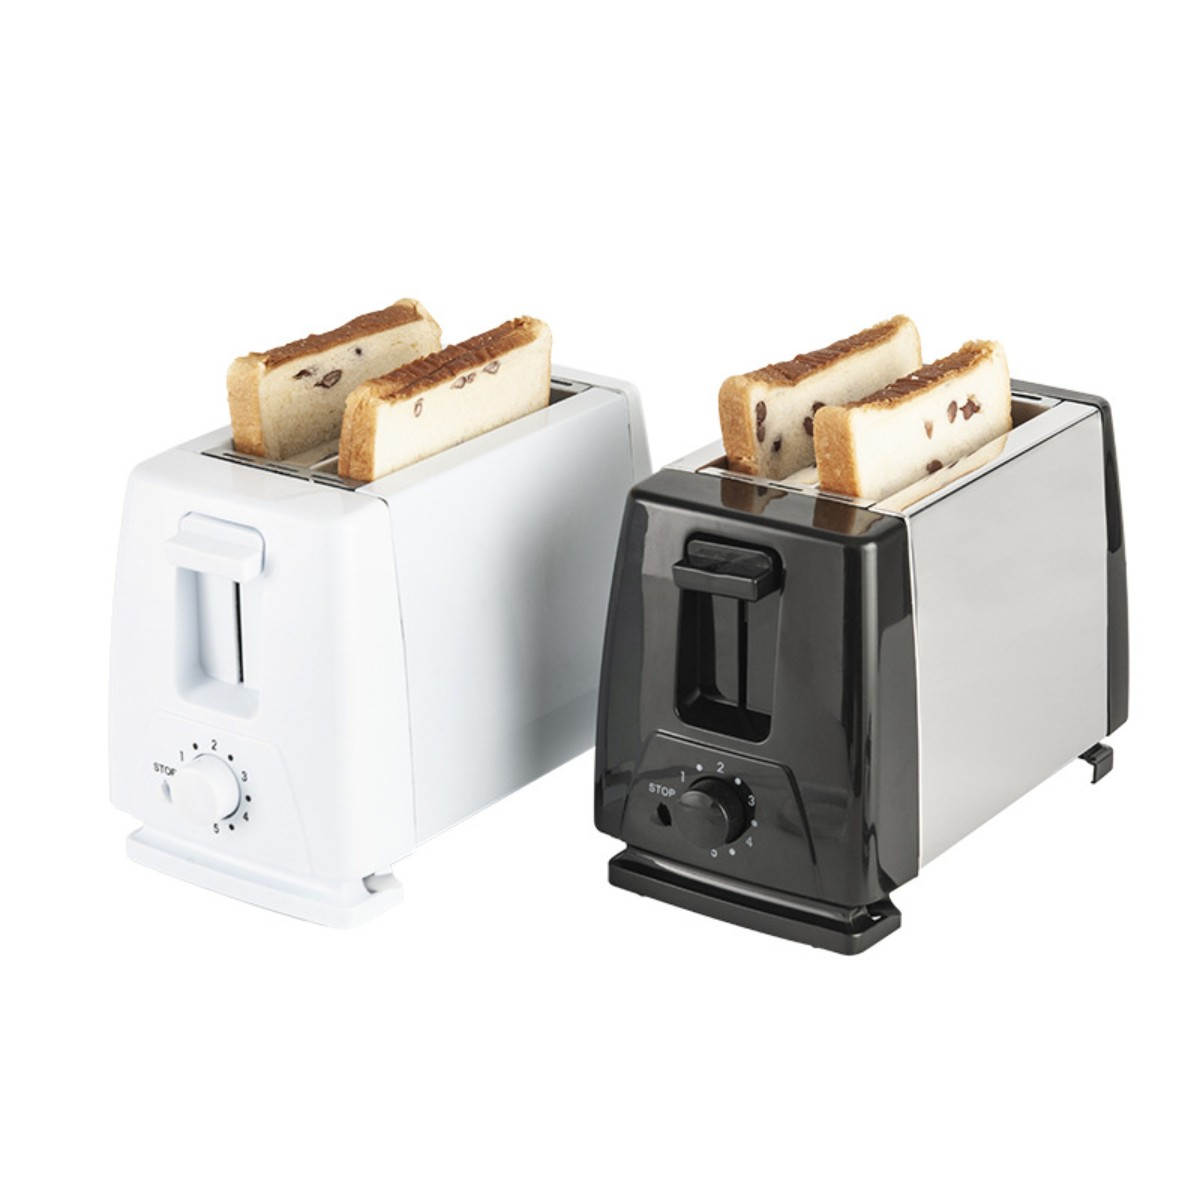 Weiß (750 FEI Sandwich 2) Toaster Watt, Toaster Schlitze: Toaster 220V Brotbackautomat Frühstück Maker Weiß